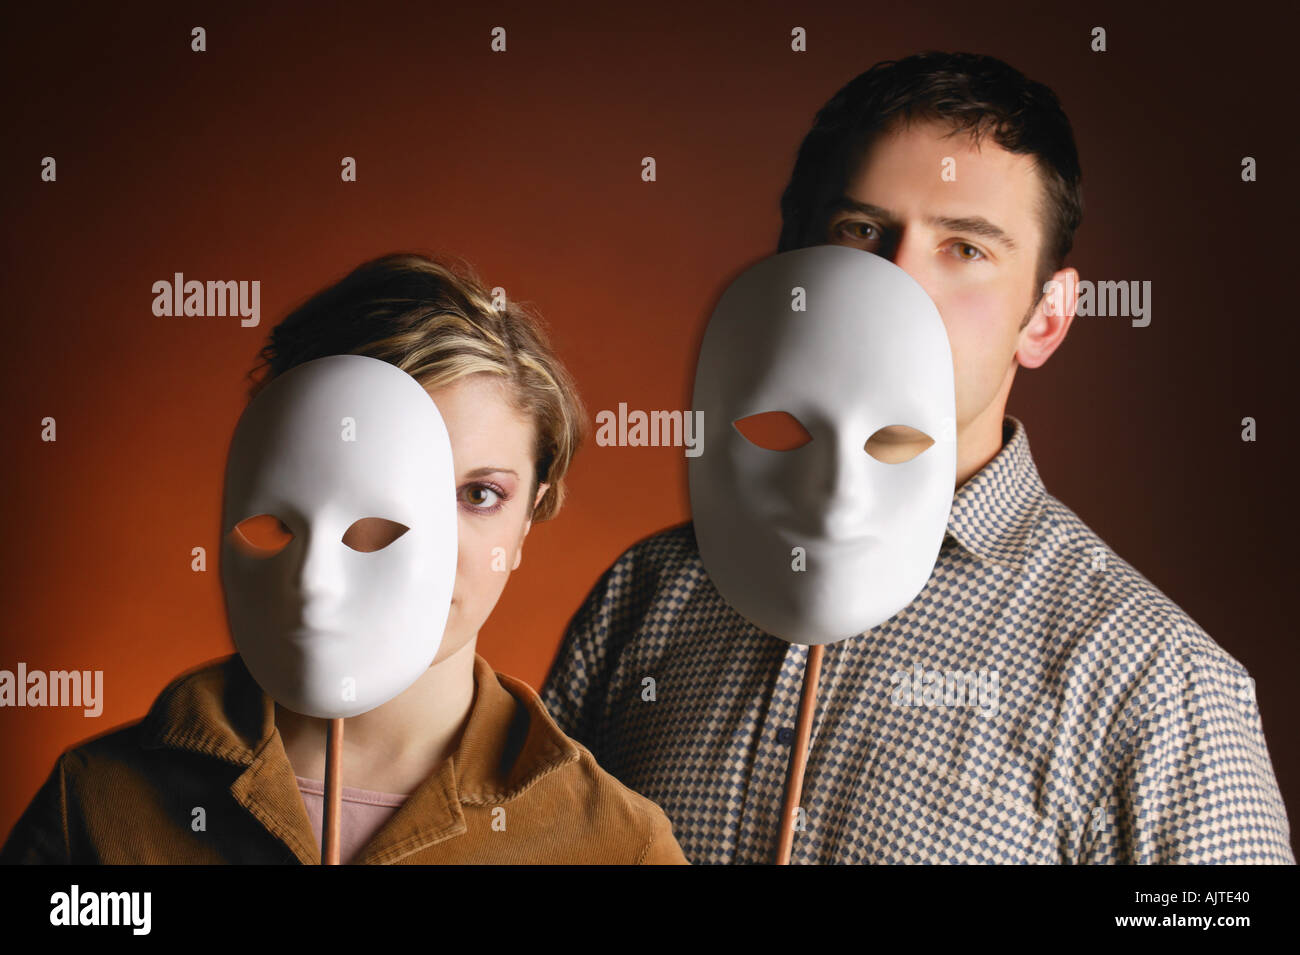 Где будут снимать маску. Человек в маске. Социальные маски. Роли маски.